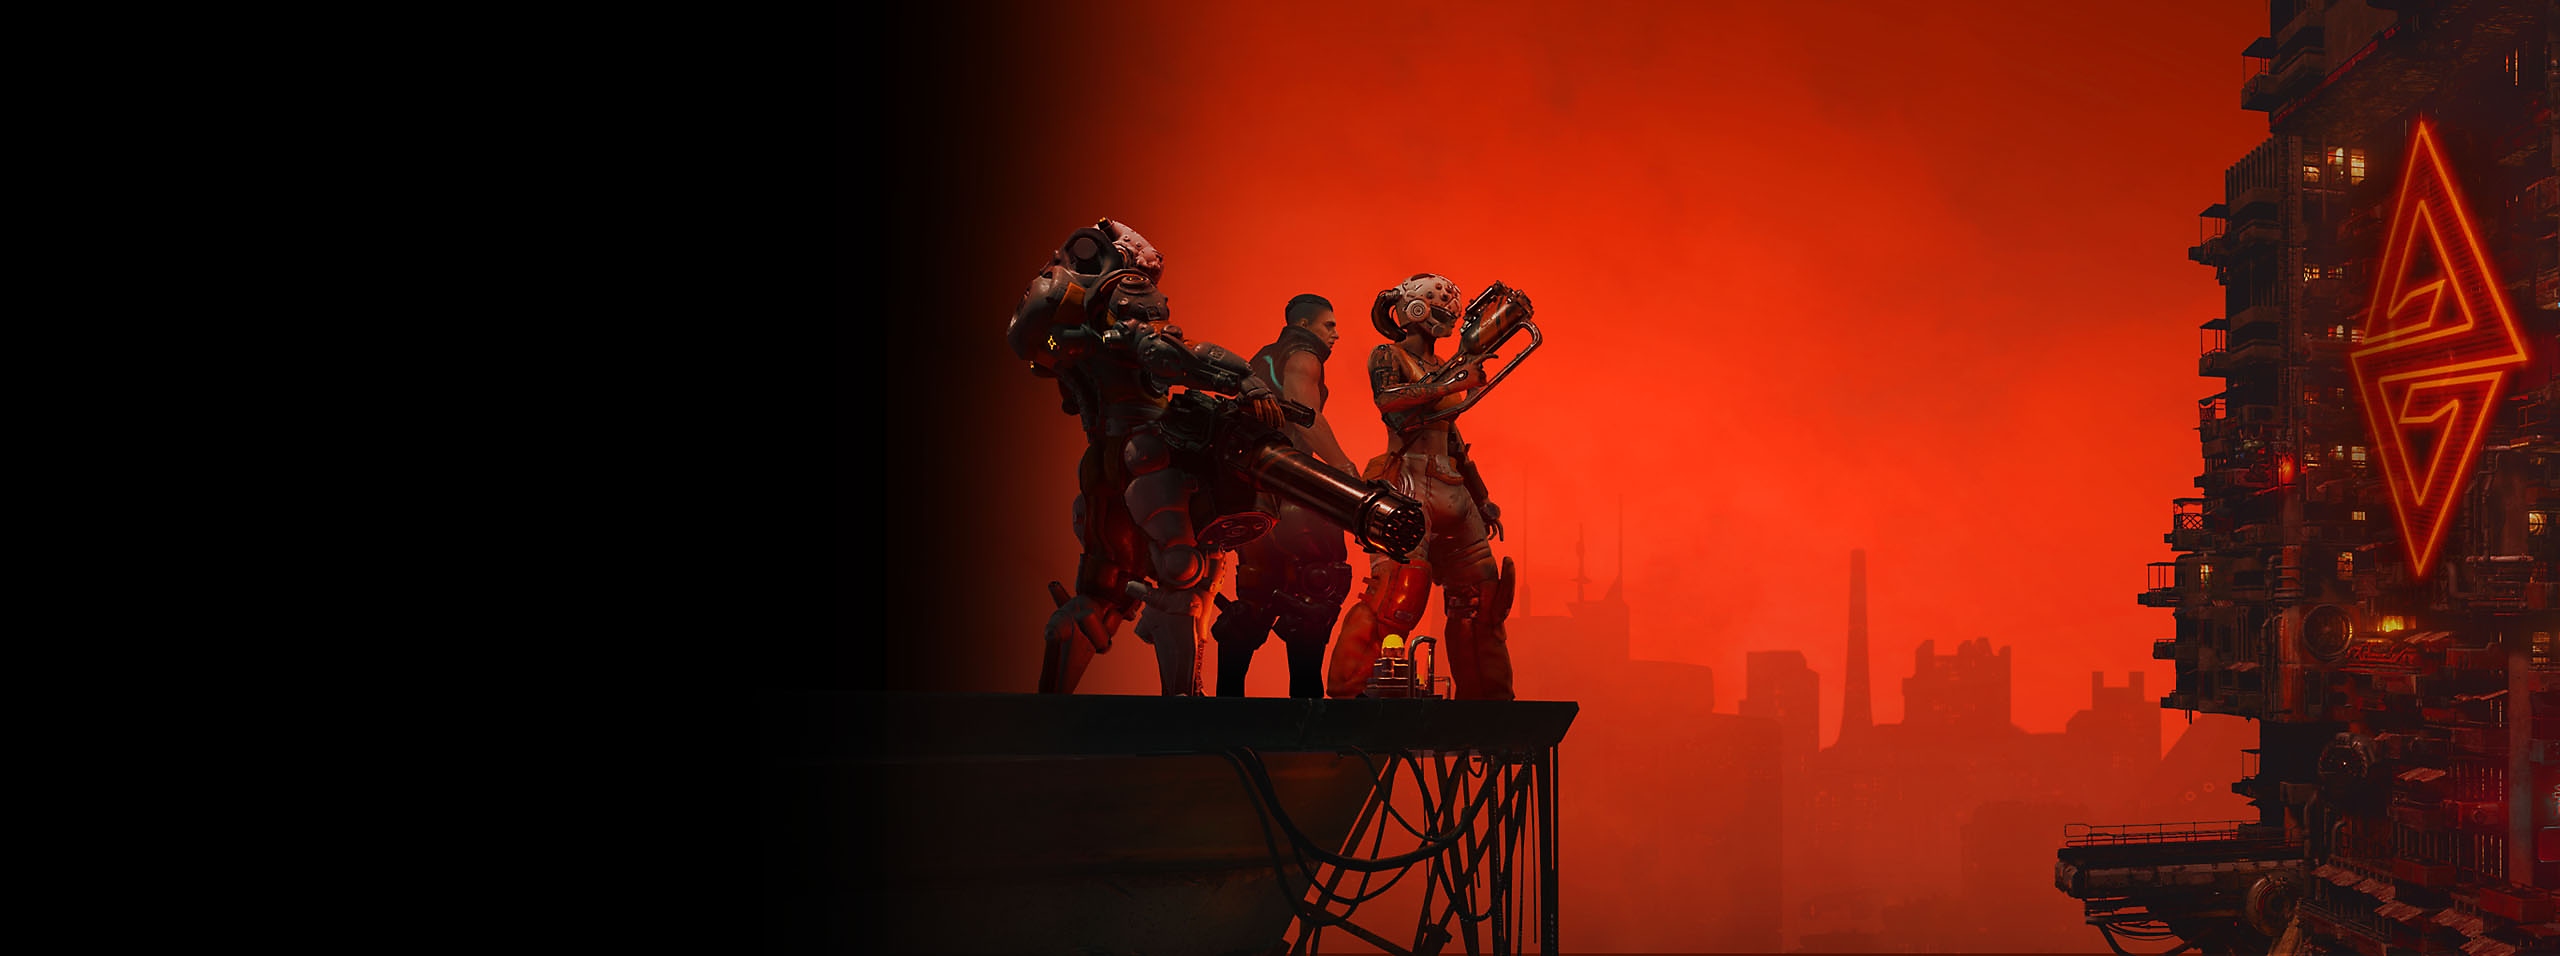 Illustrasjon fra The Ascent av tre rollefigurer og en skyline under en rød himmel 